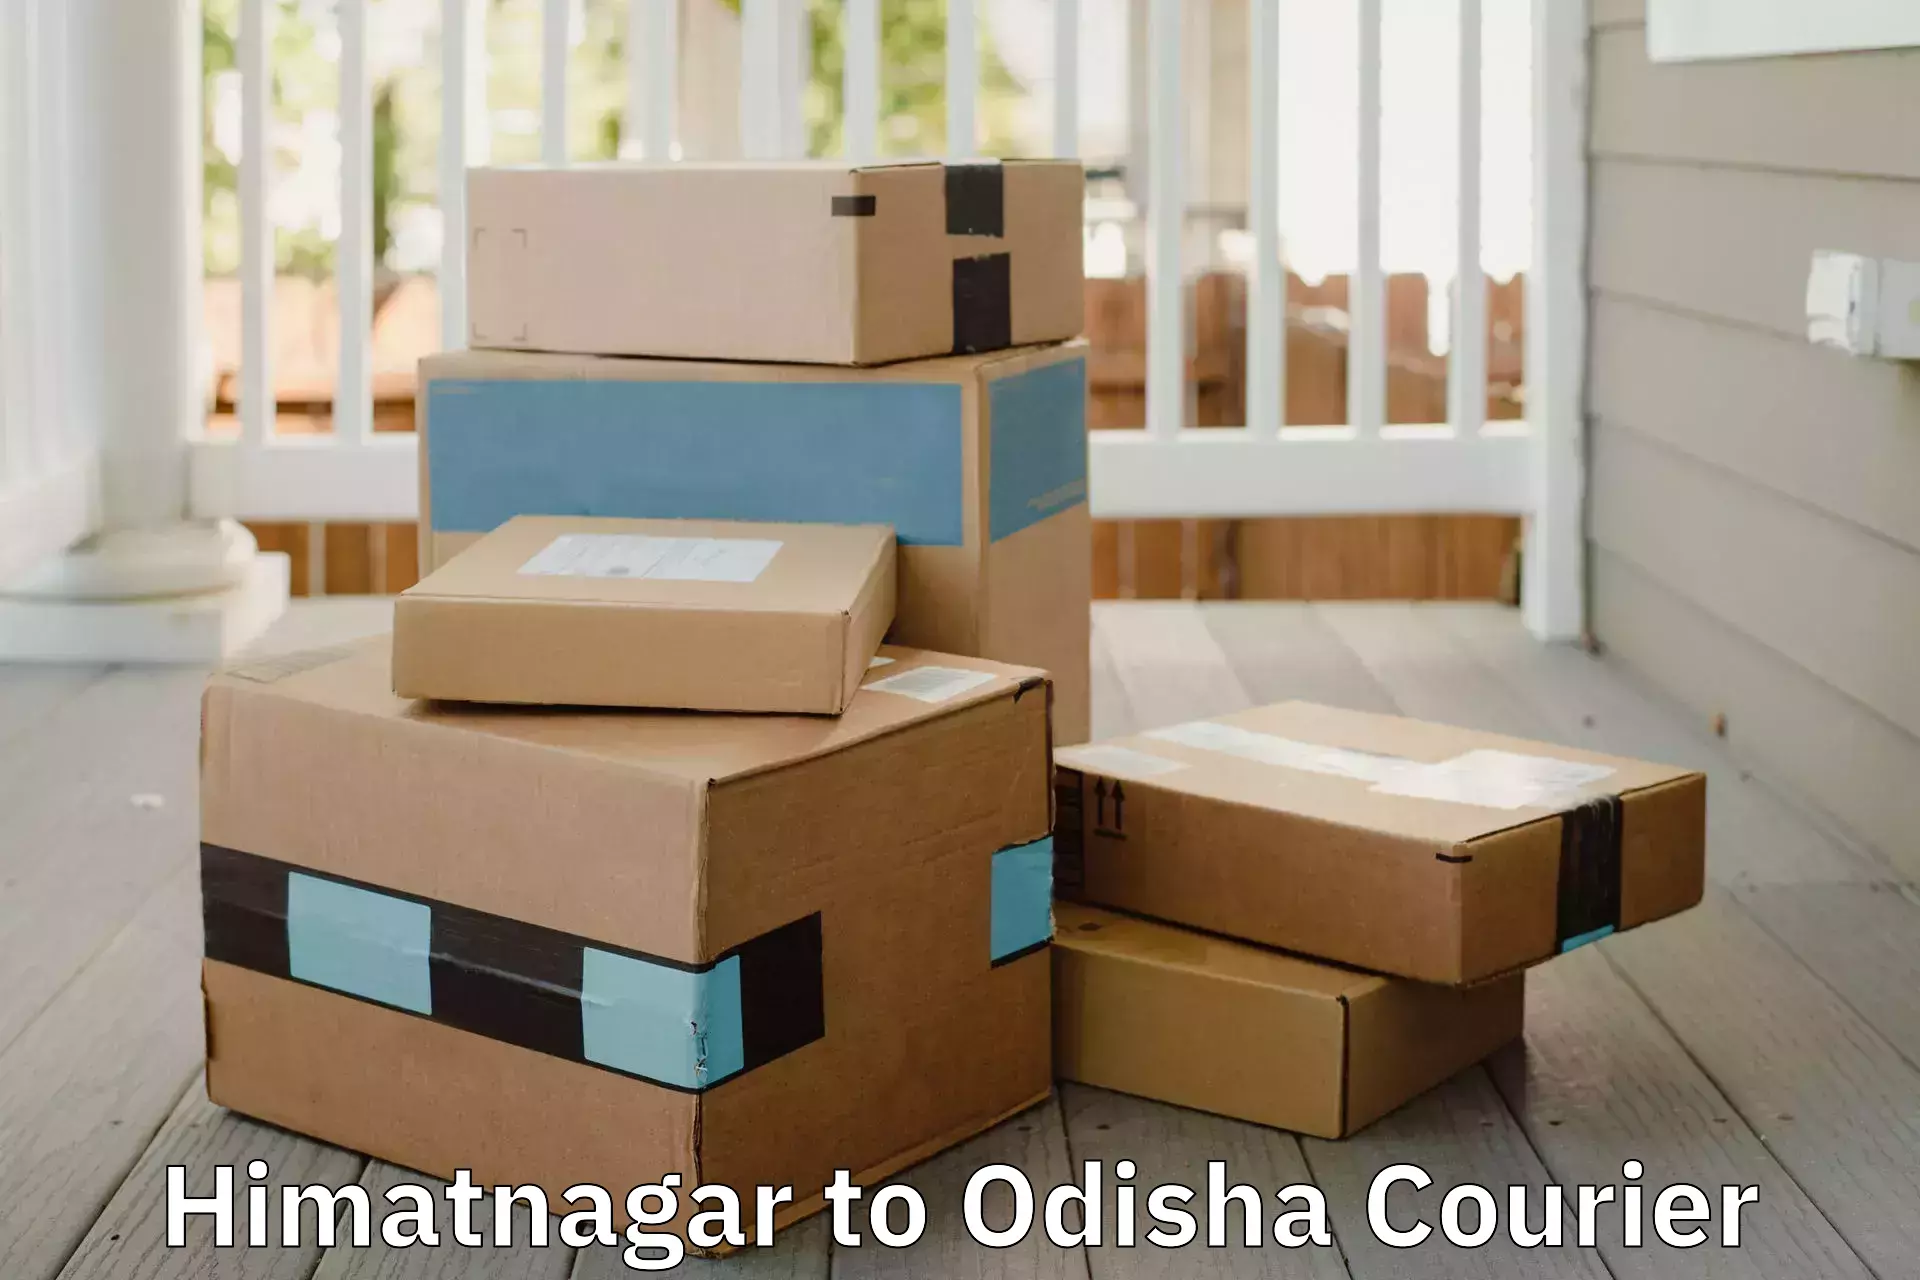 Professional furniture movers Himatnagar to Chandbali